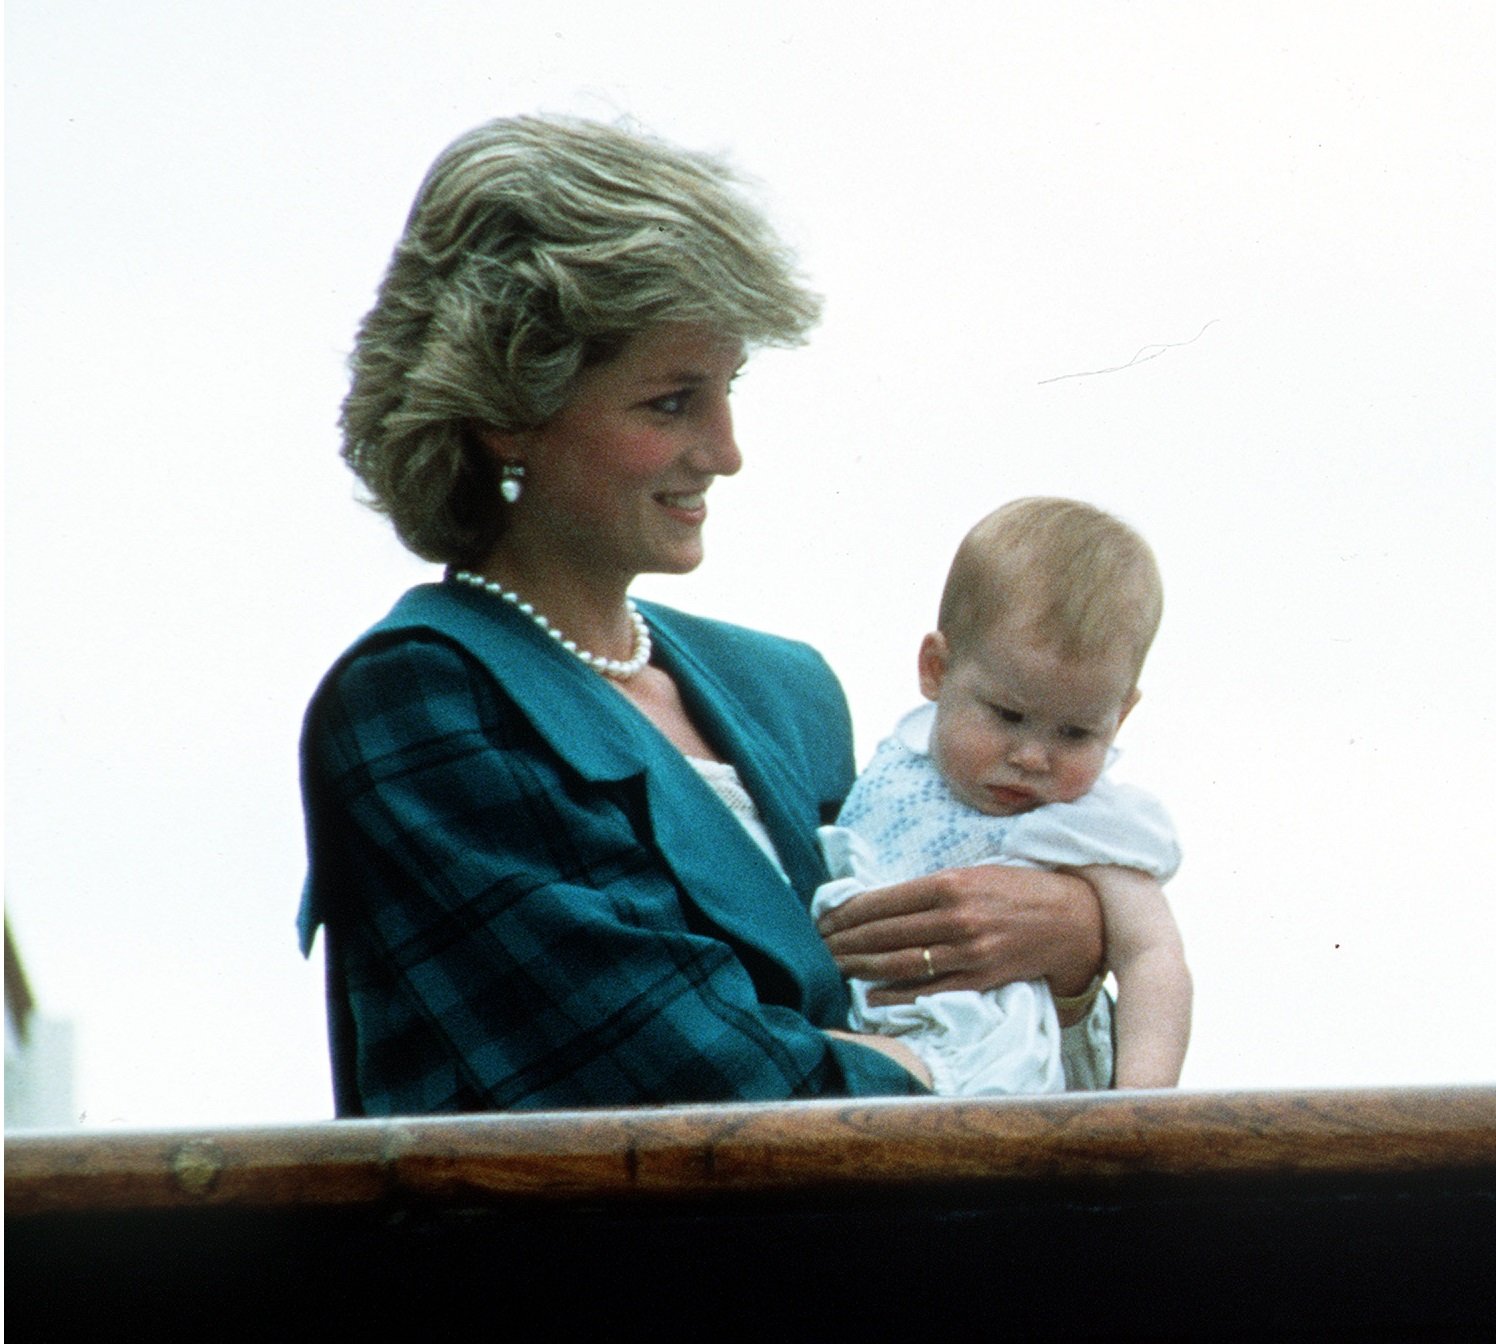 Diana, Princesa de Gales, con el Príncipe Harry en brazos en Venecia, Italia en mayo de 1985. | Imagen: Getty Images